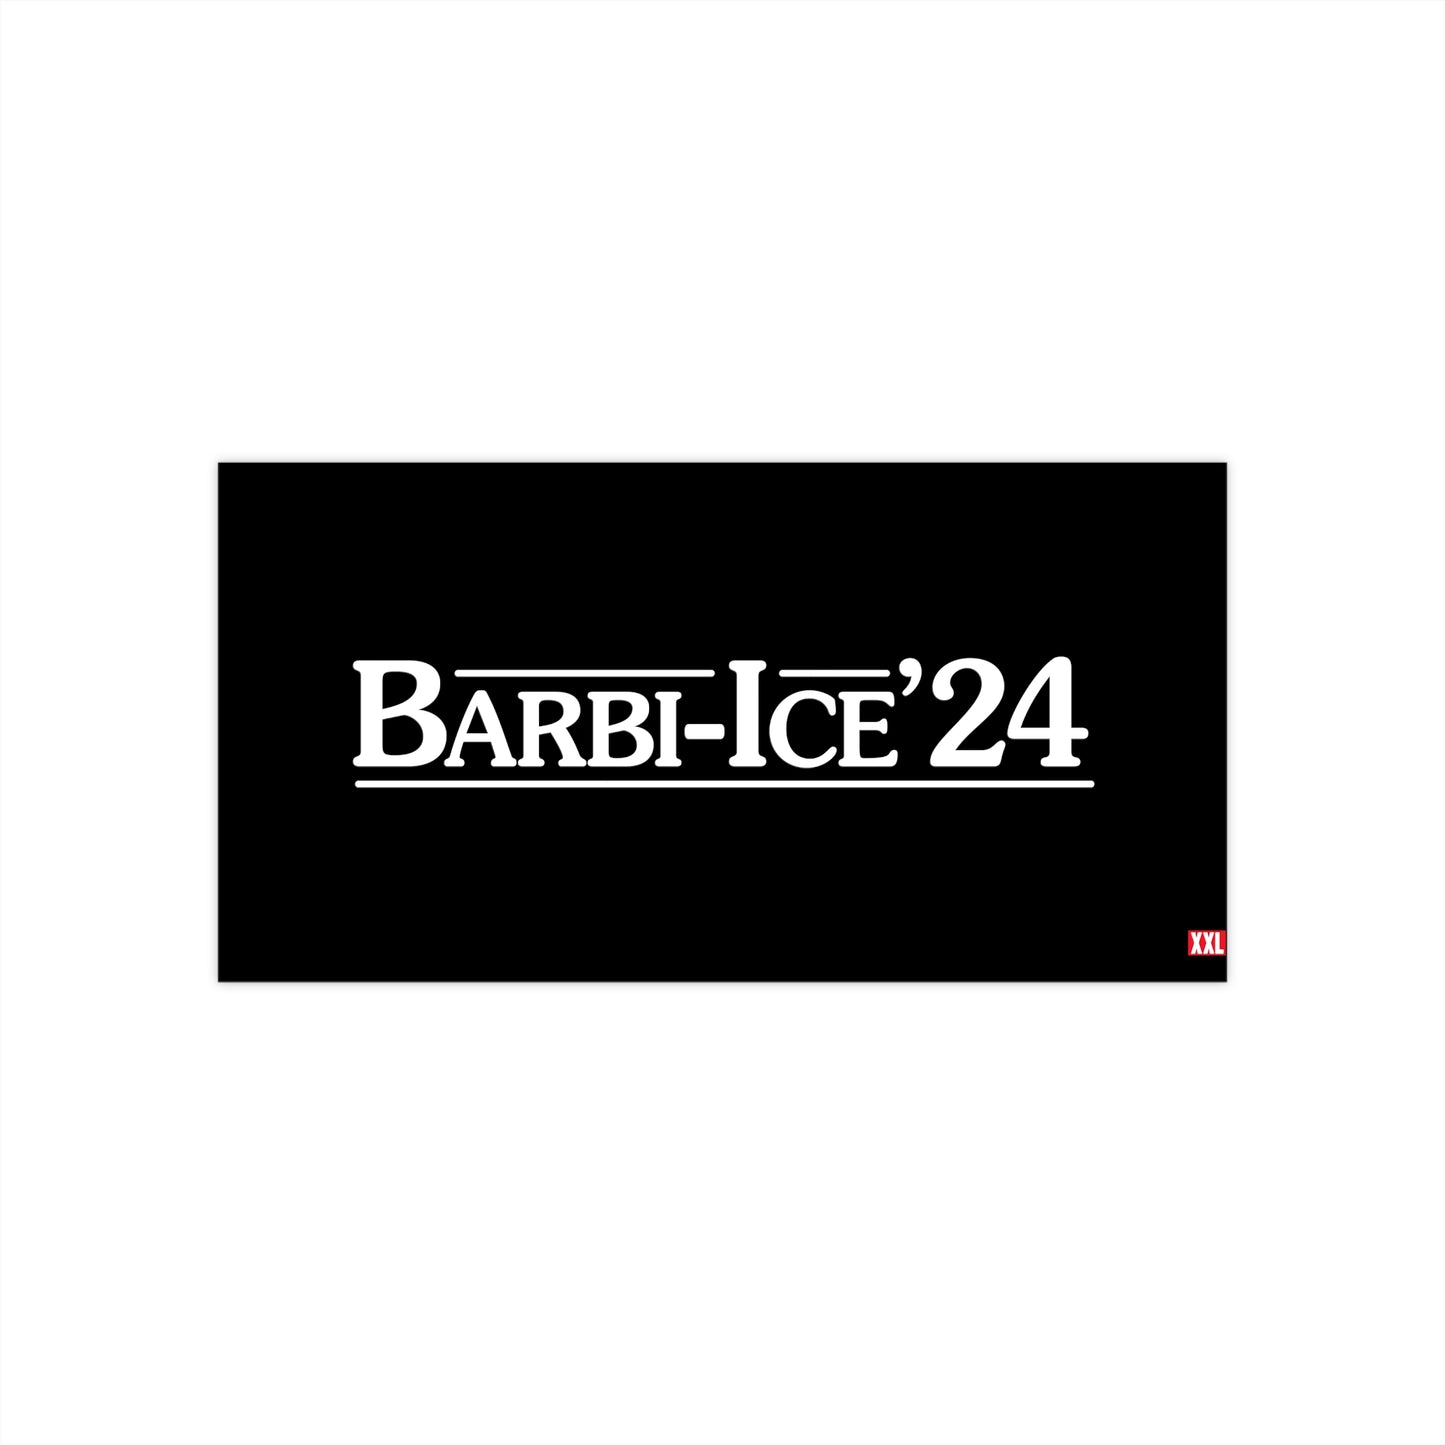 Barbie-Ice '24 Bumper Sticker